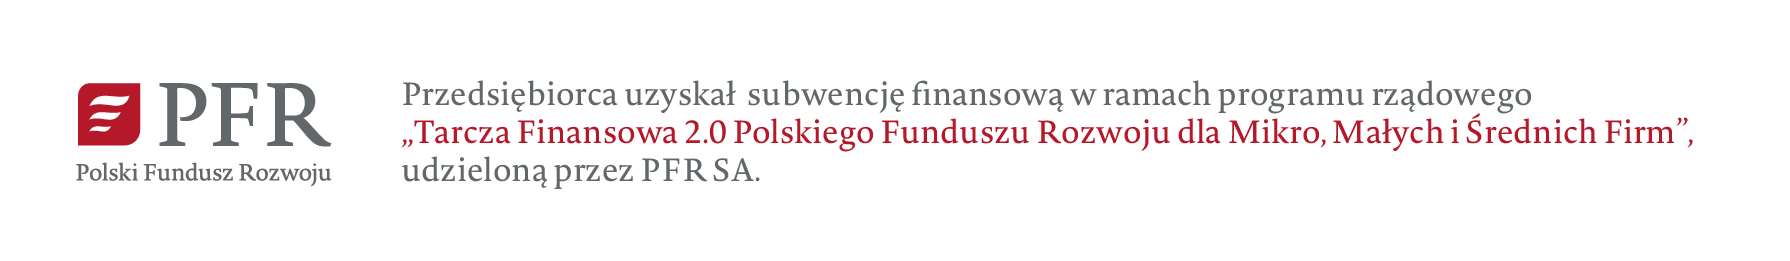 PFR - Polski Fundusz Rozwoju - Tarcza Finansowa 2.0